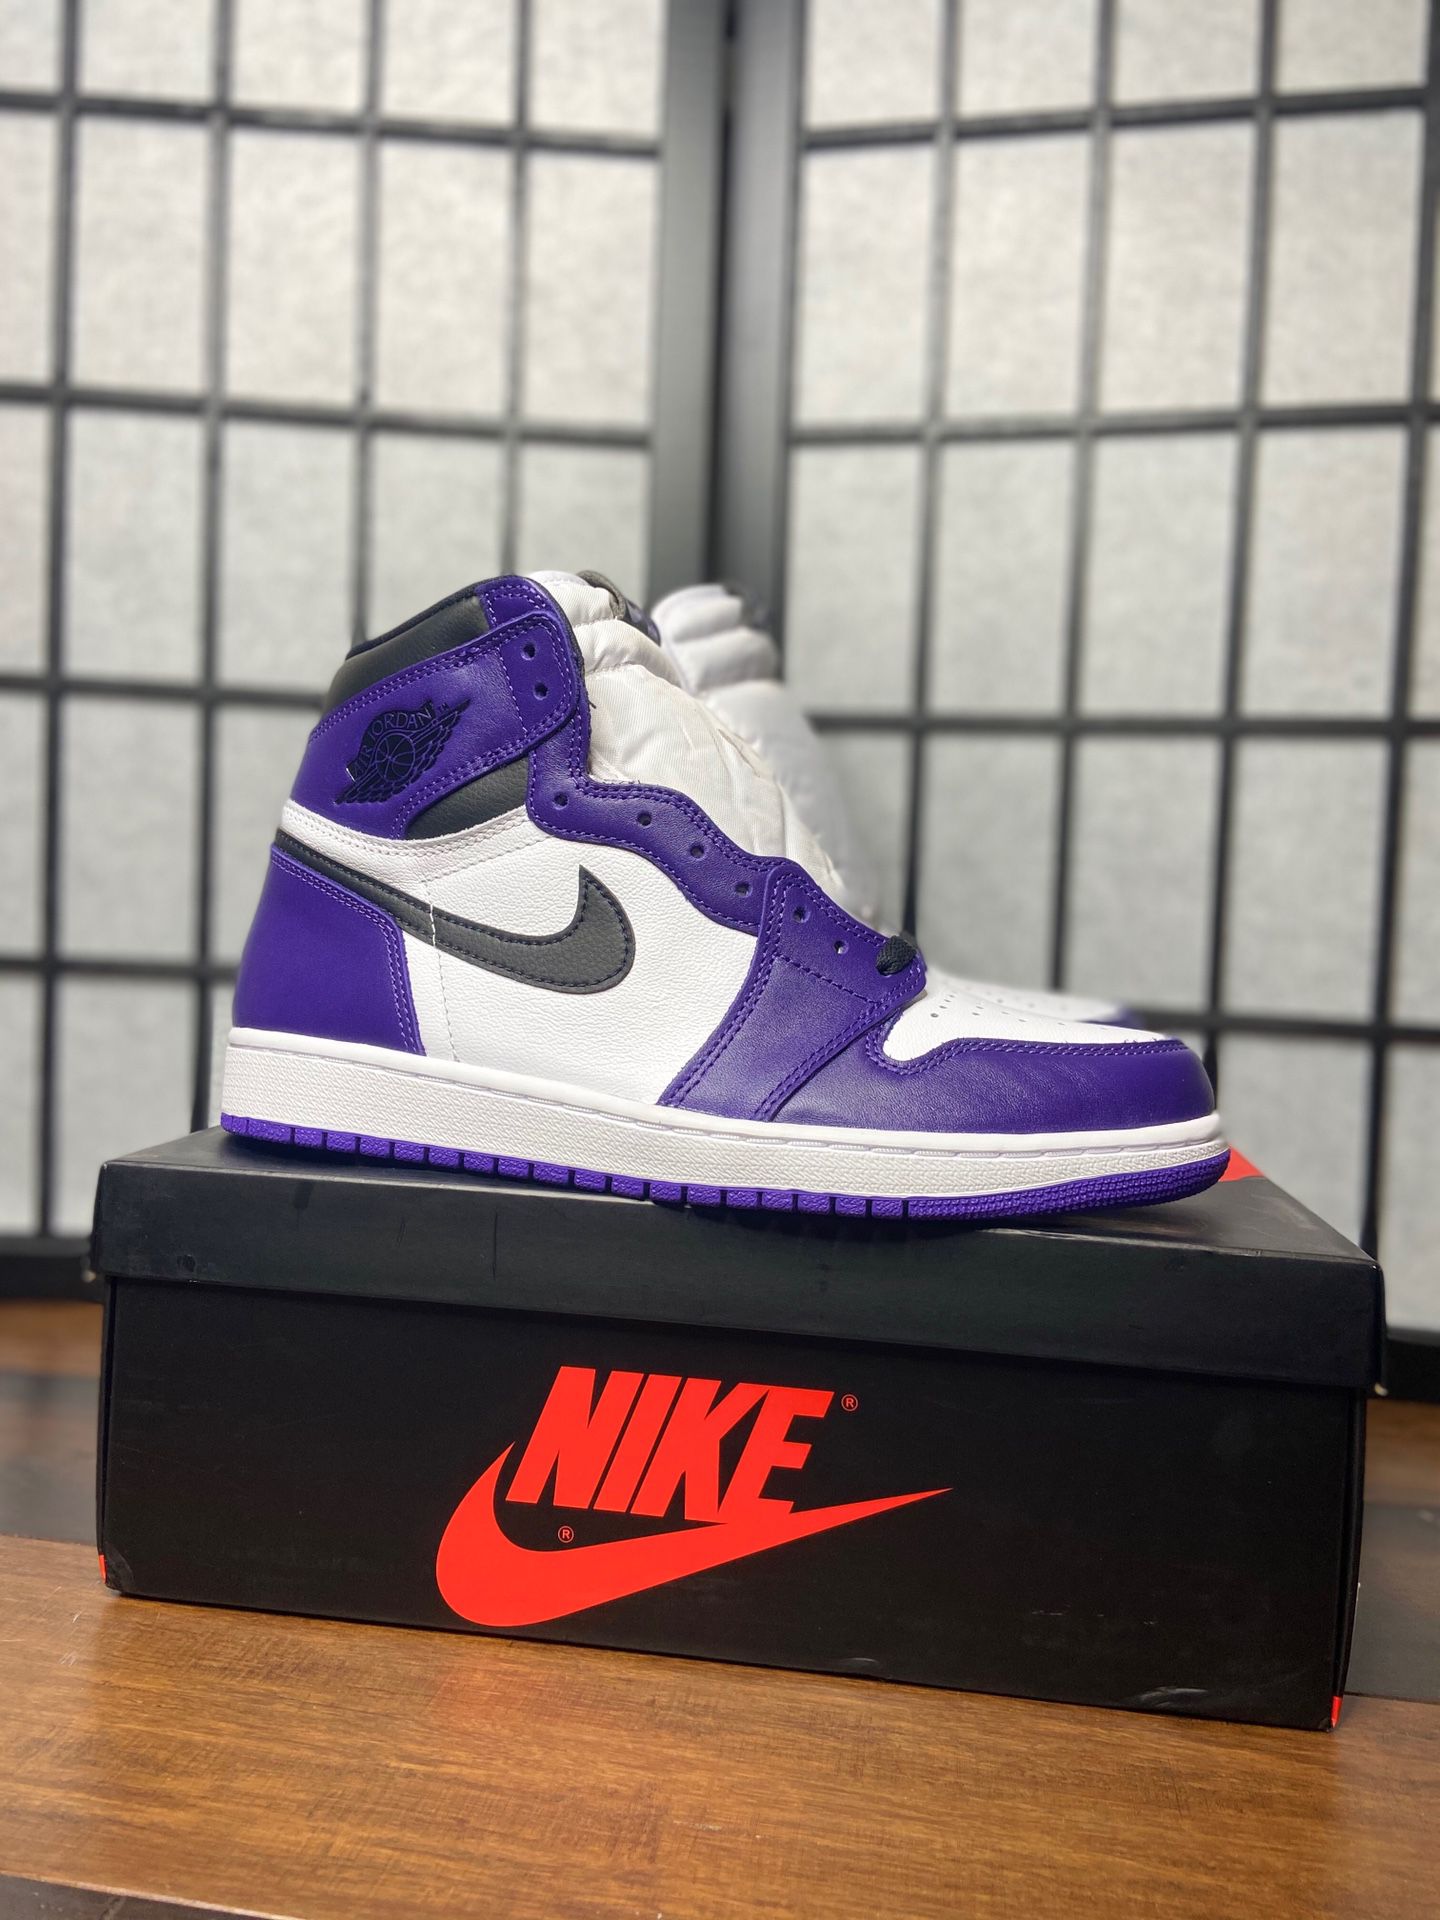 Air Jordan 1 retro high court purple